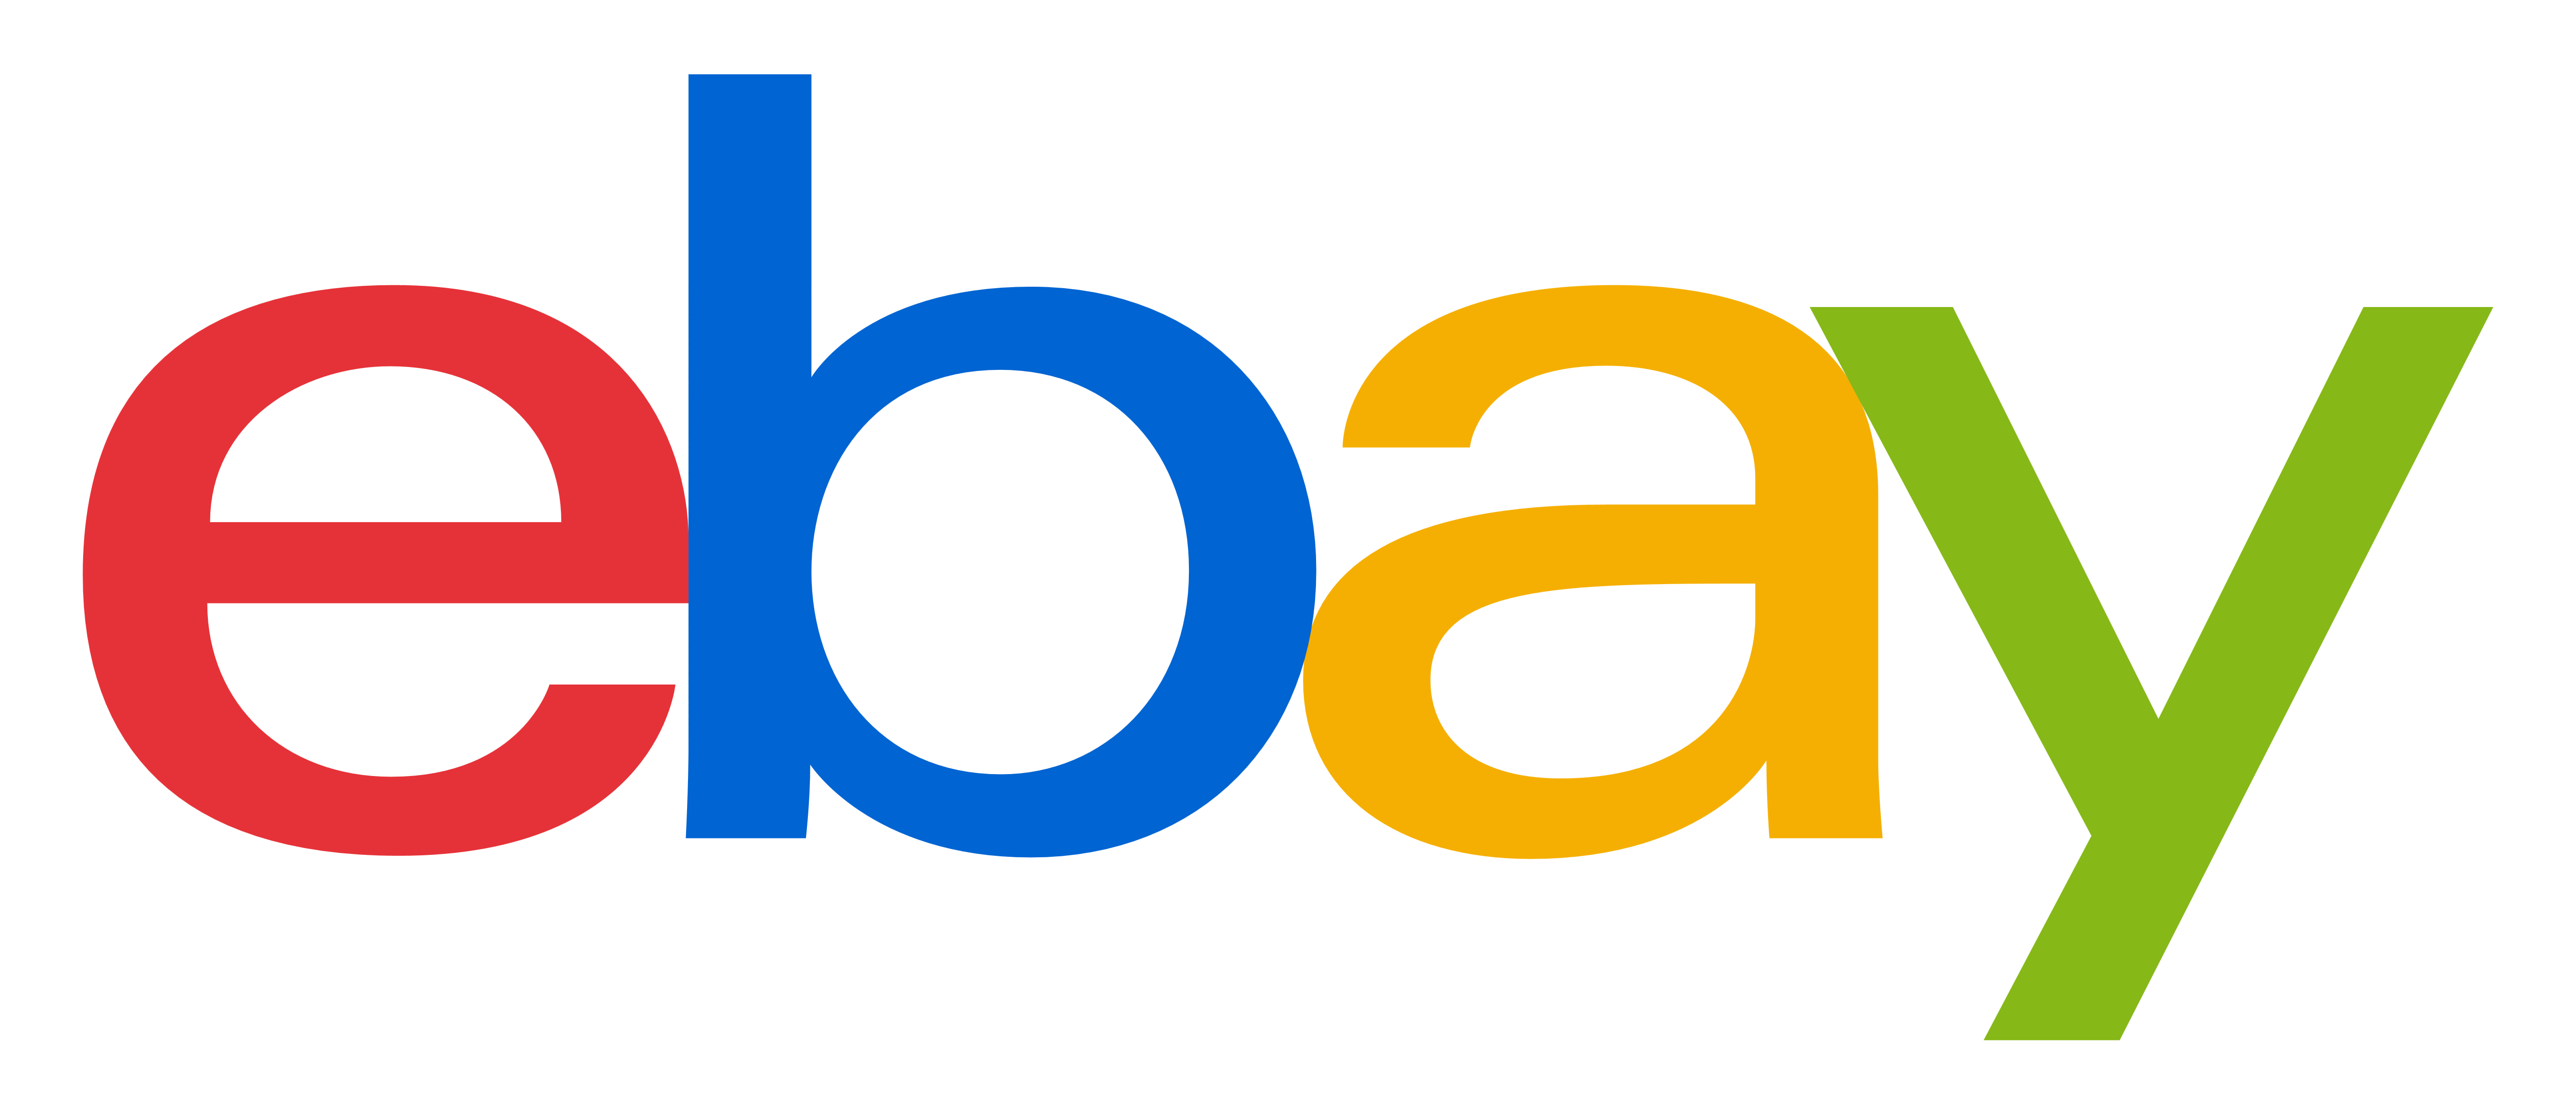 EBay logo прозрачные изображения